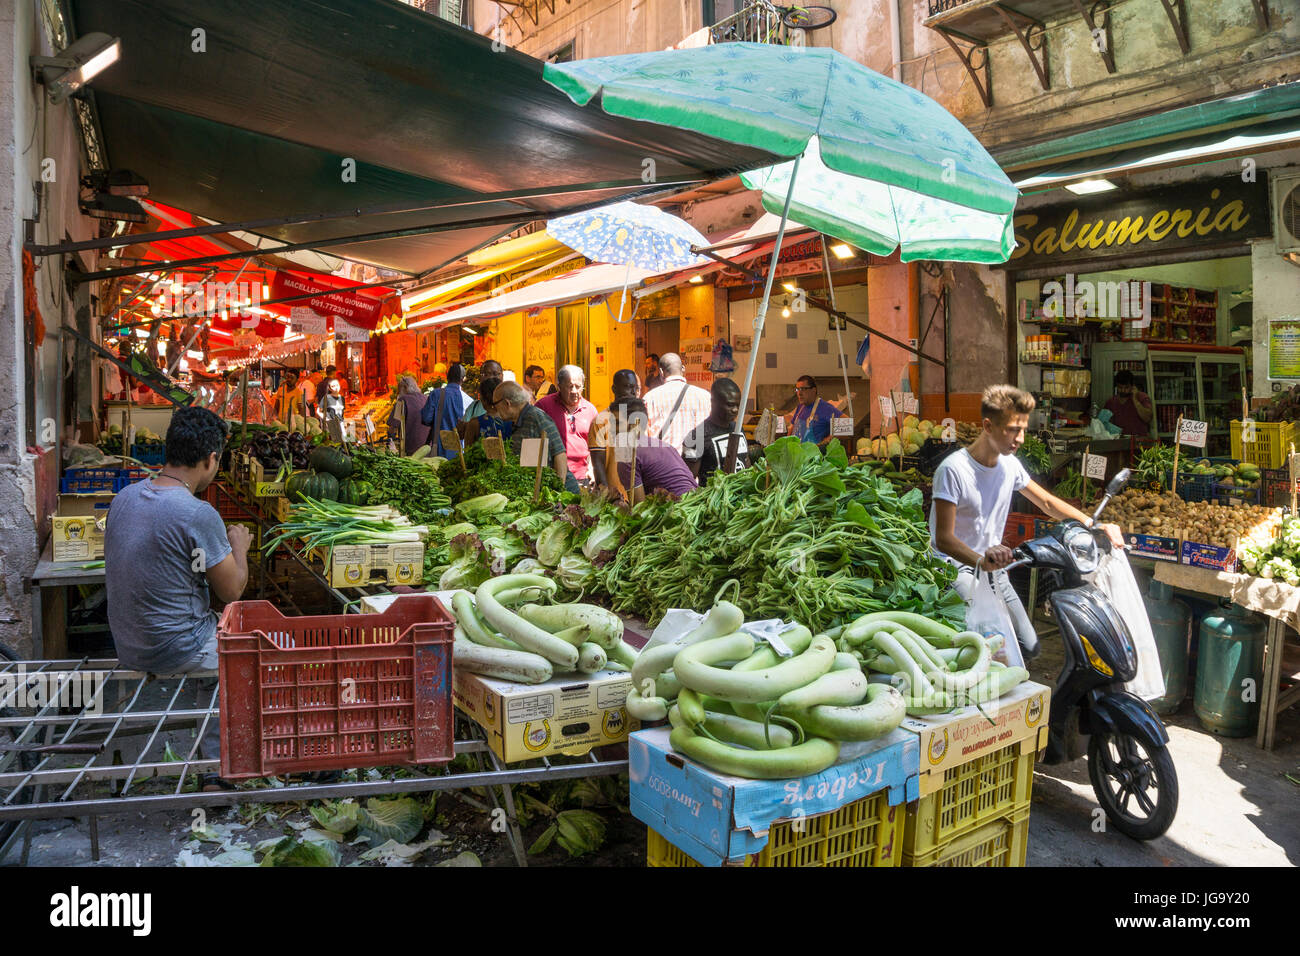 Le marché Ballaro dans l'Albergheria, dans le centre de Palerme, Sicile, Italie. Banque D'Images